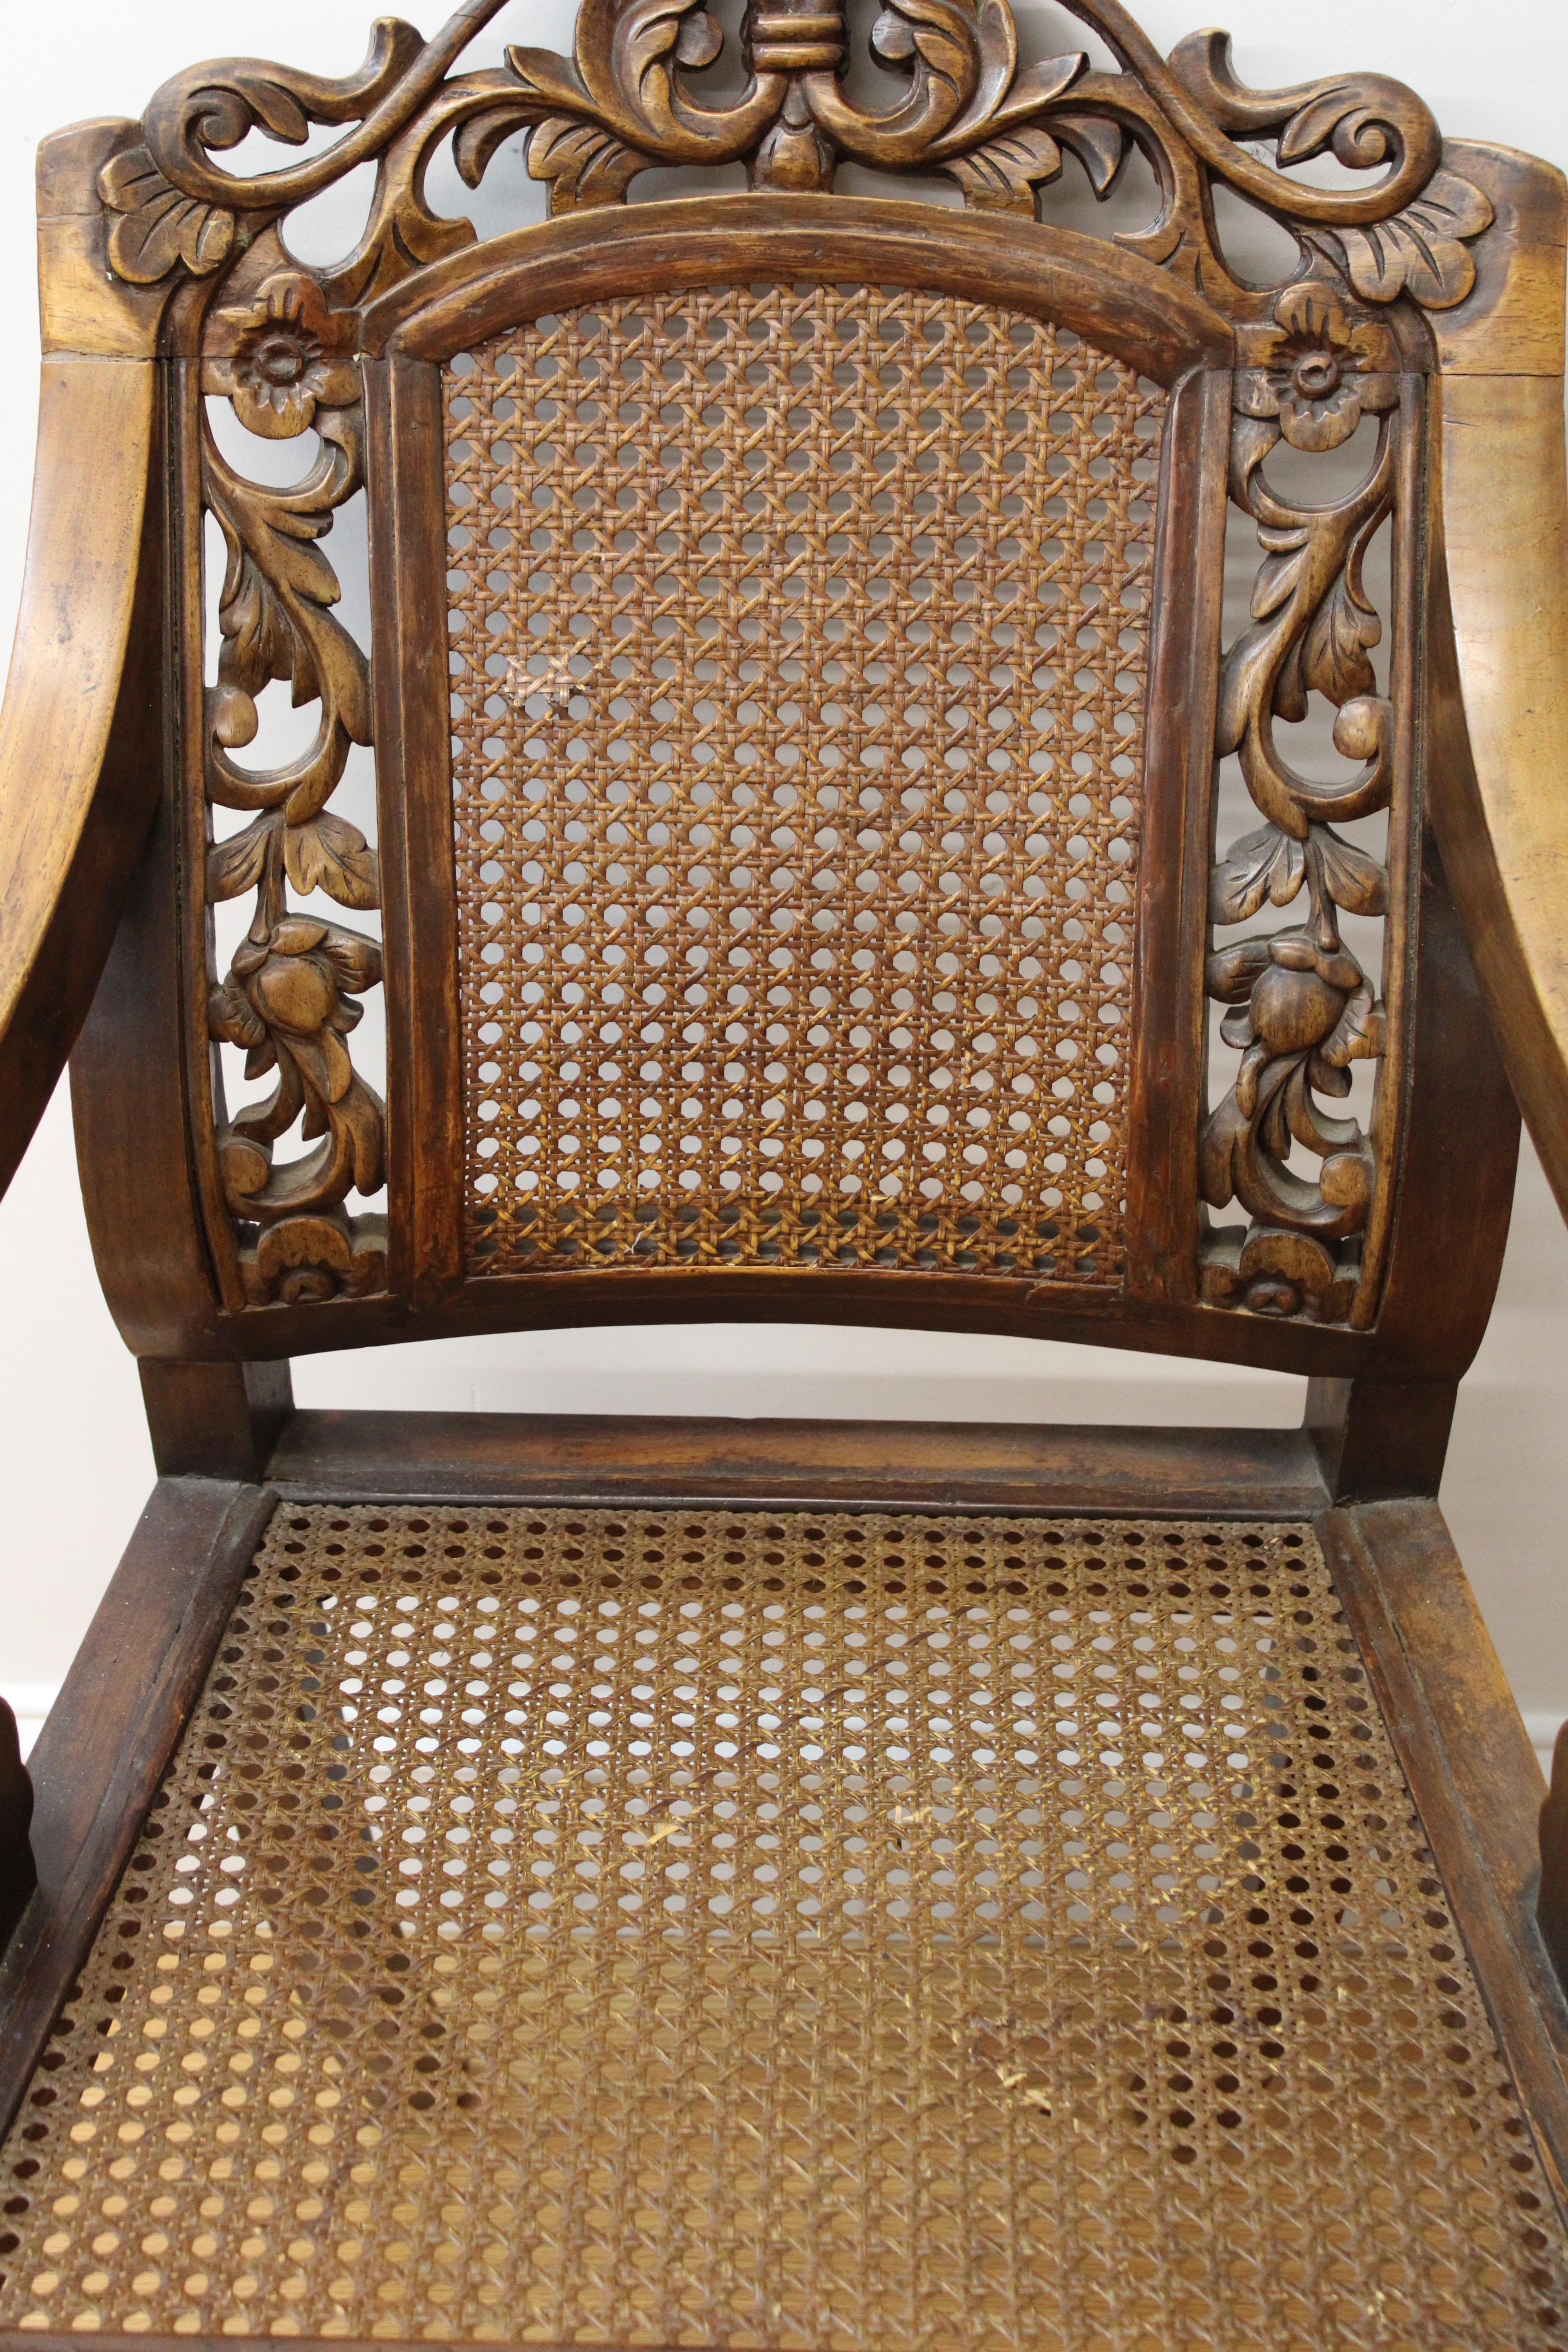 C. 20ème siècle

Paire de fauteuils en bois canné et sculpté, avec un magnifique motif floral sculpté à la main sur les dossiers.